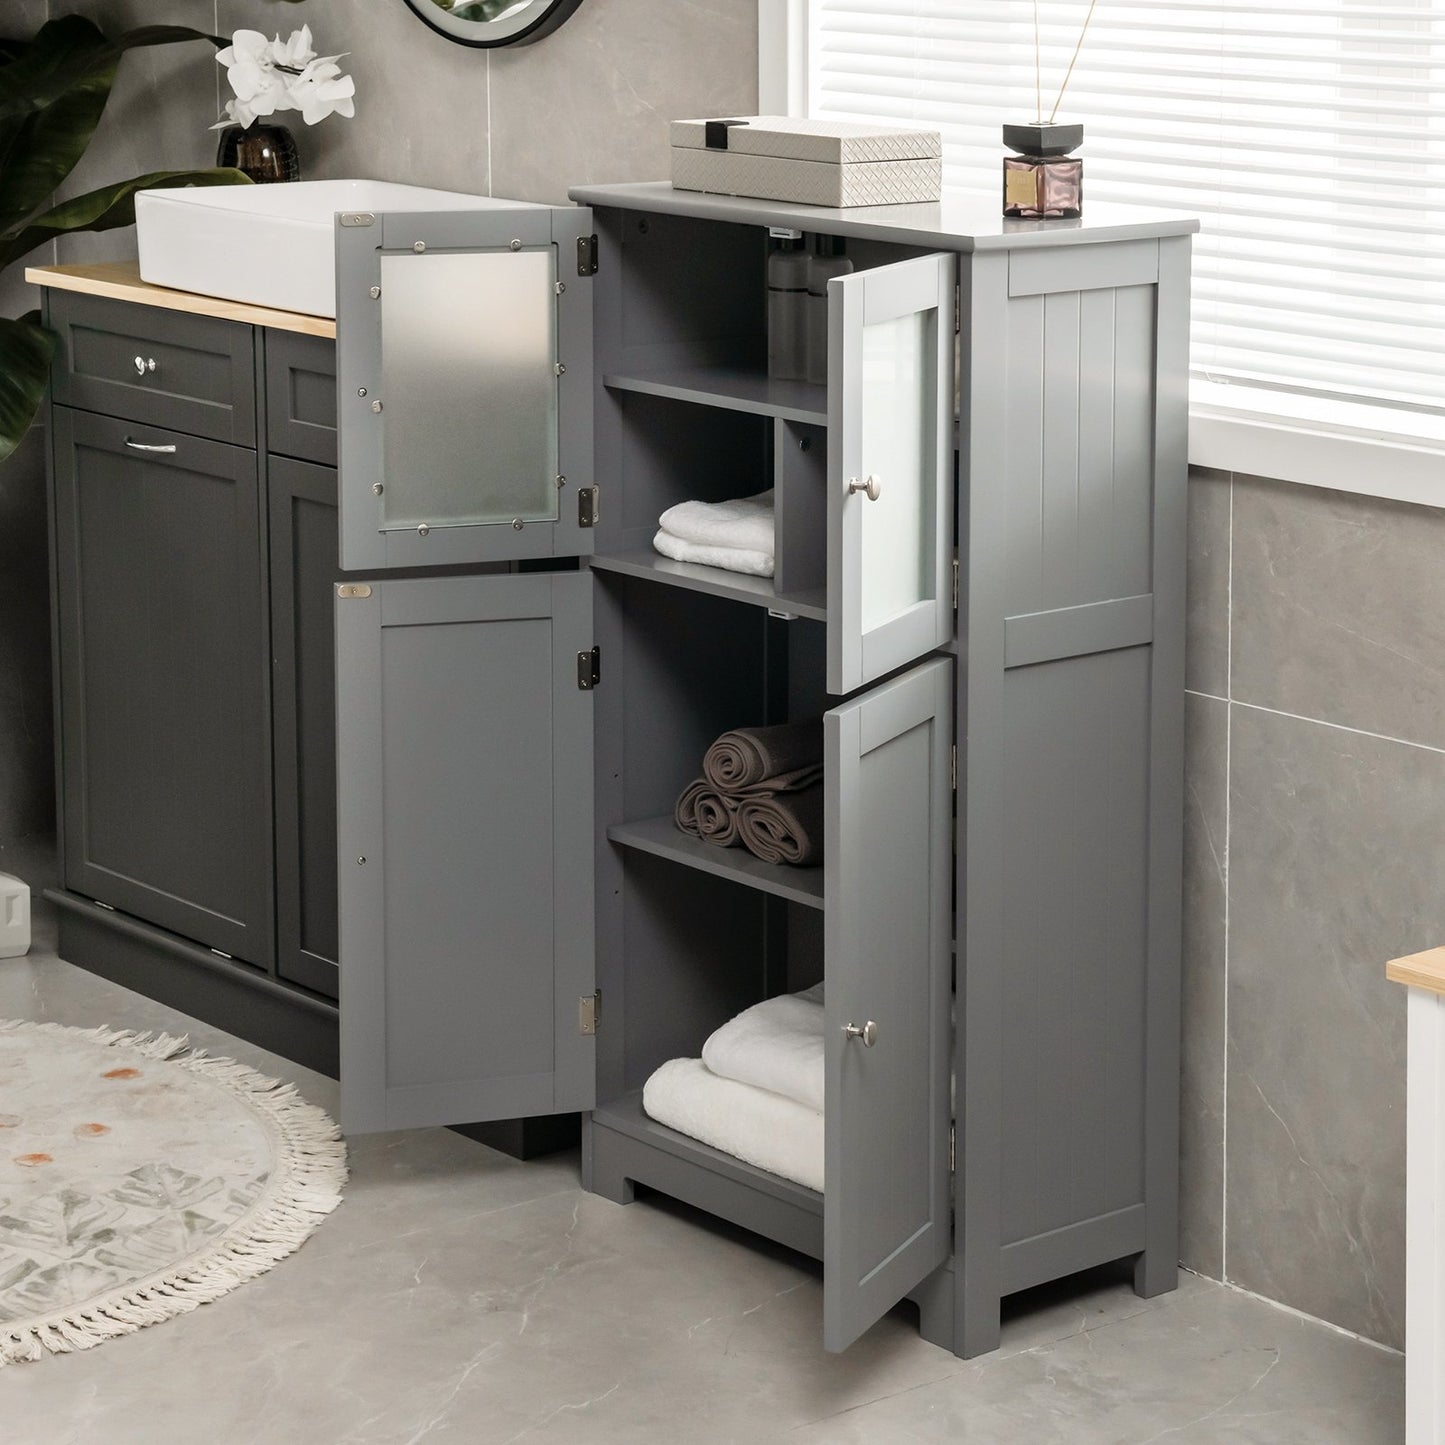 Bathroom Floor Storage Locker Kitchen Cabinet with Doors and Adjustable Shelf, Gray